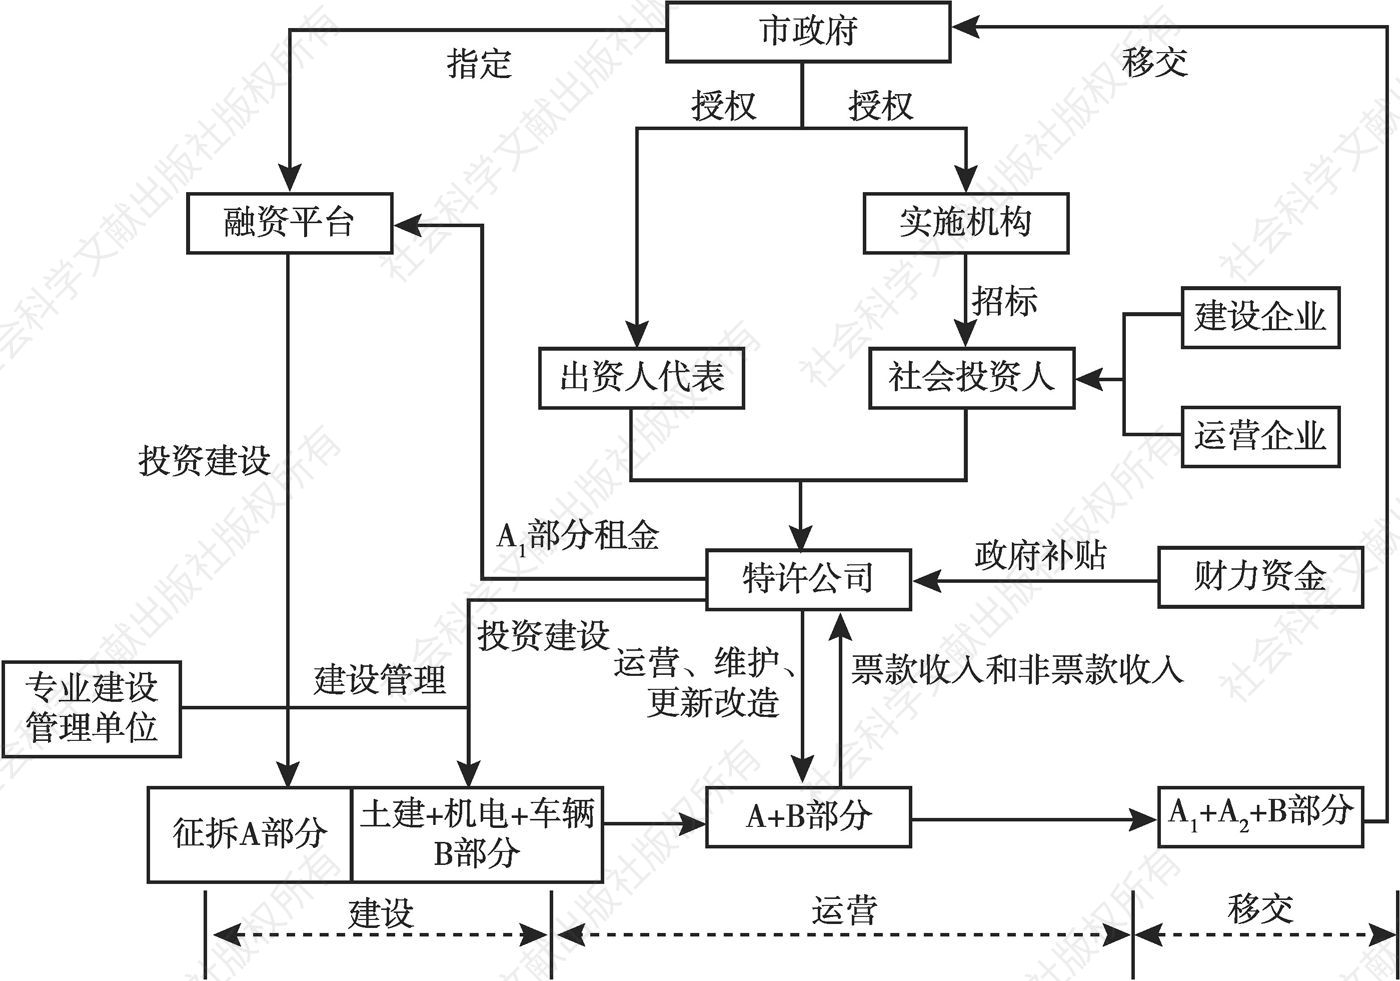 图3 北京地铁新机场线PPP项目运作模式与交易结构